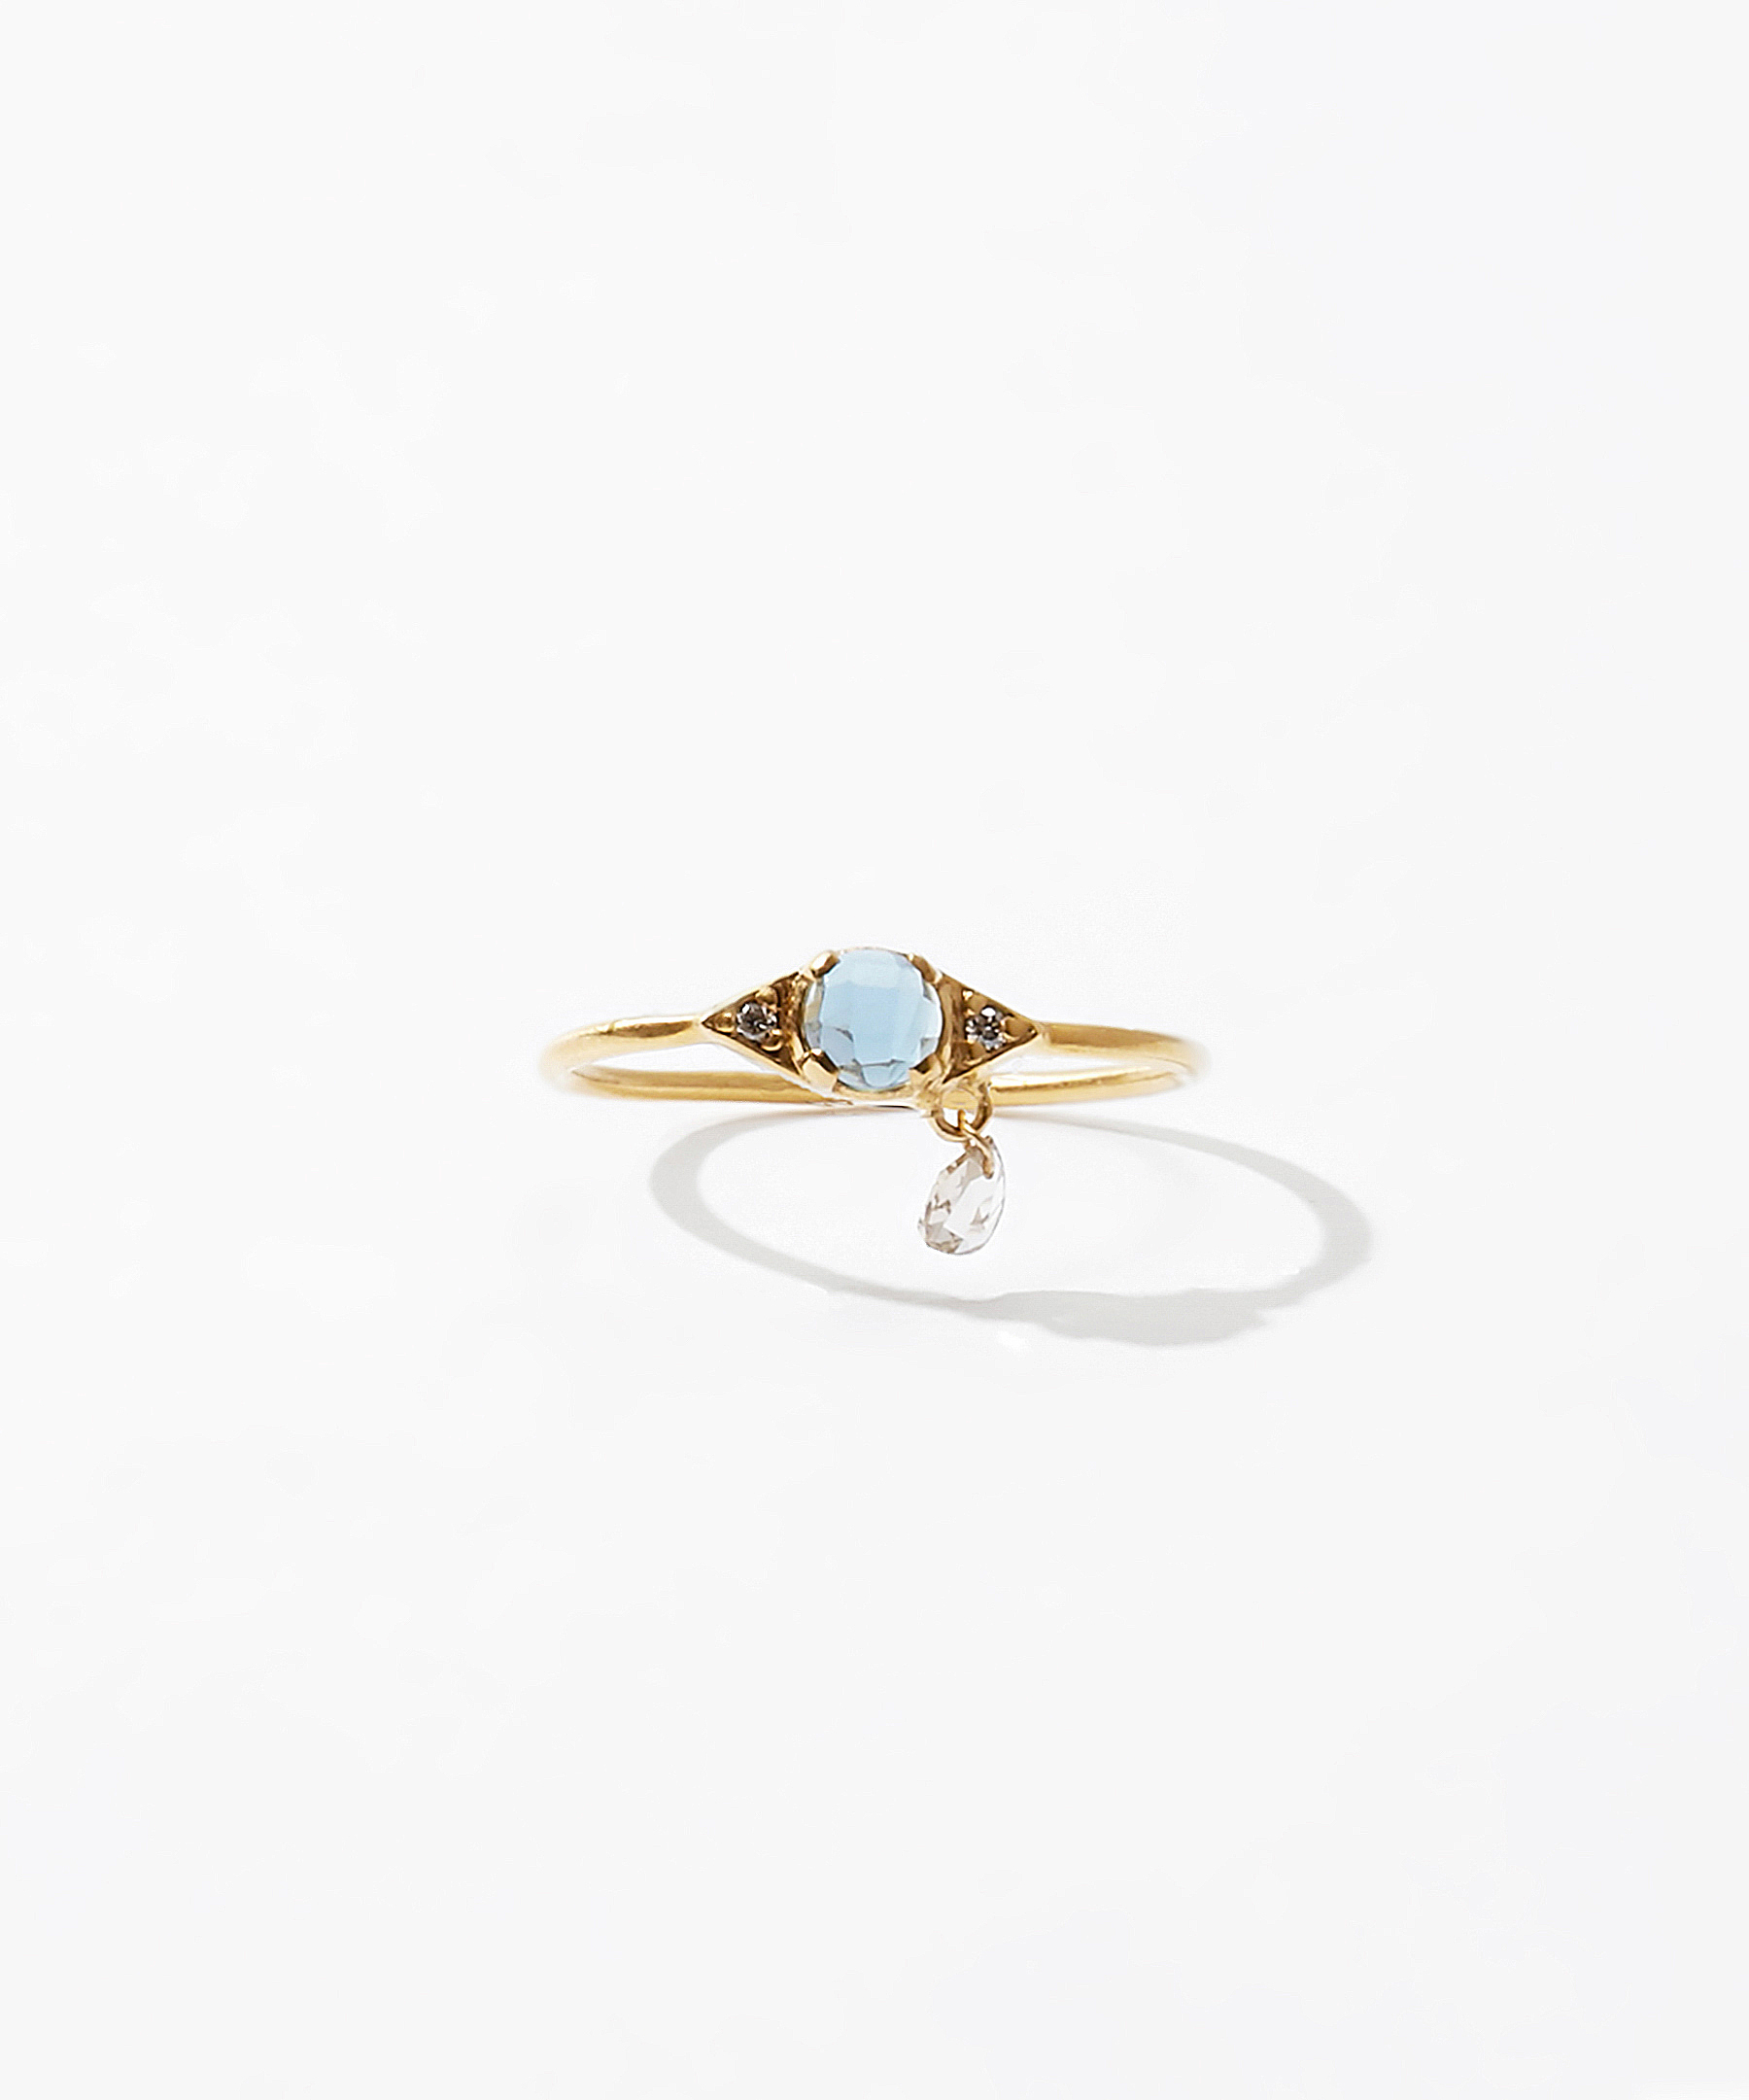 [evil eye] K10 london blue topaz ring